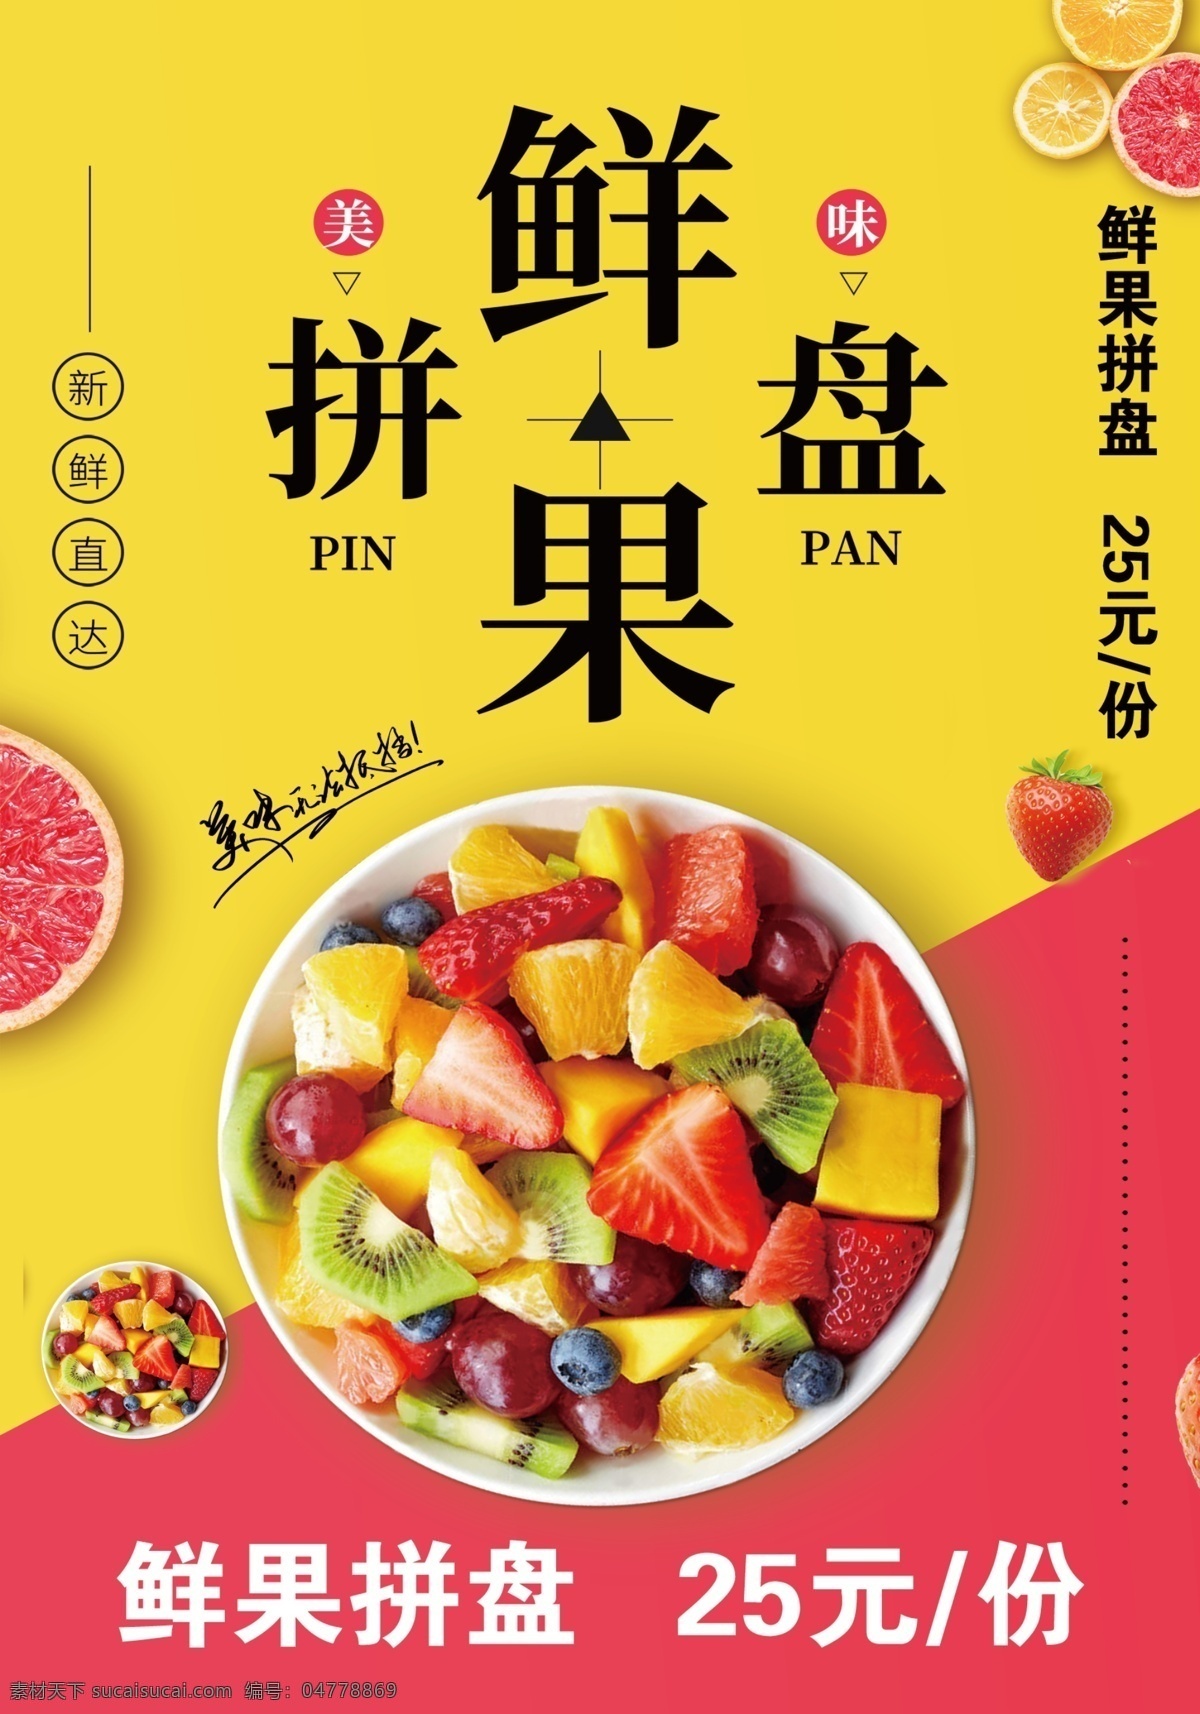 鲜果拼盘 鲜果海报 水果拼盘海报 水果 美味水果